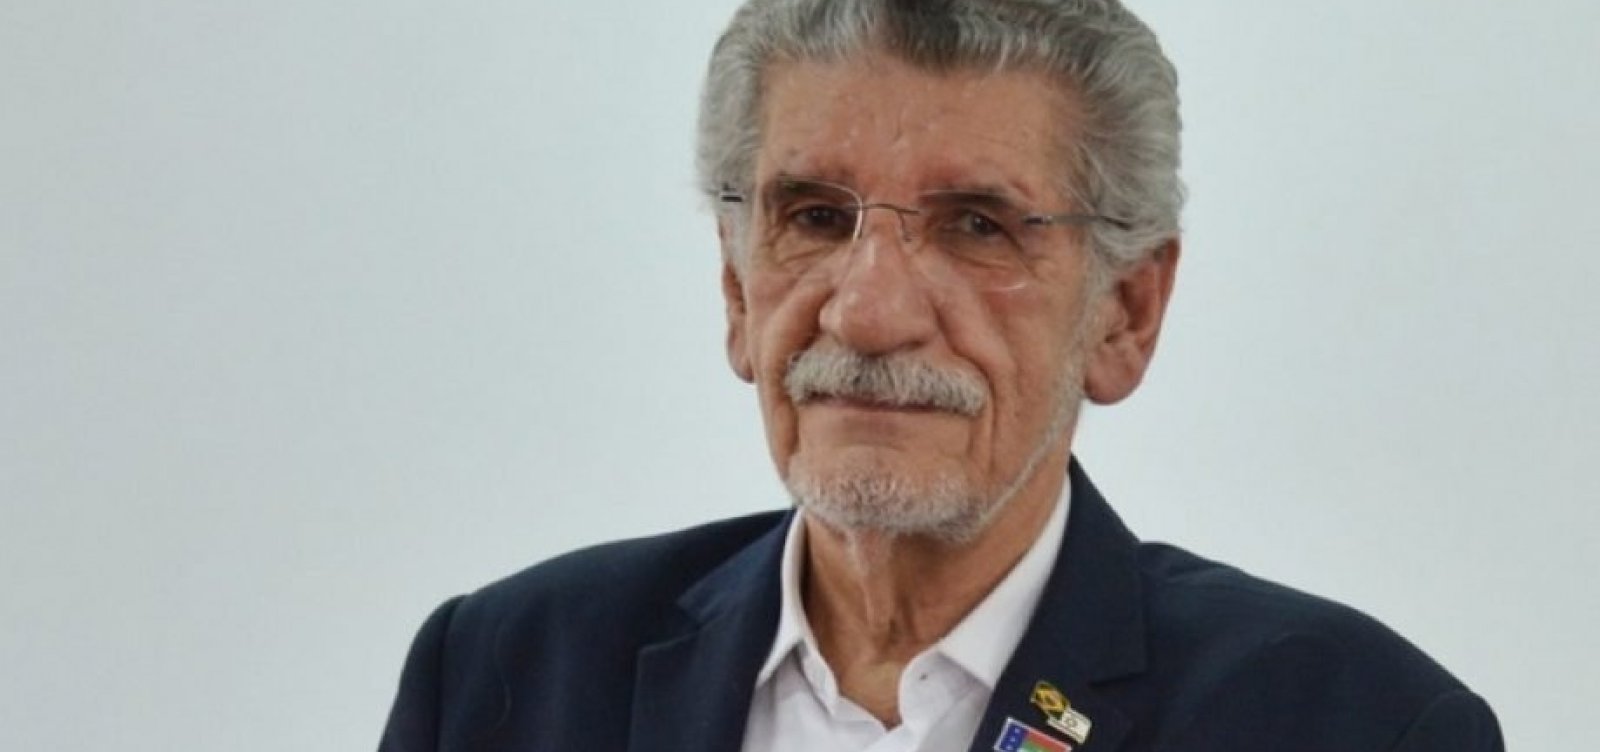 Herzem Gusmão é reeleito prefeito de Vitória da Conquista com 54% dos votos